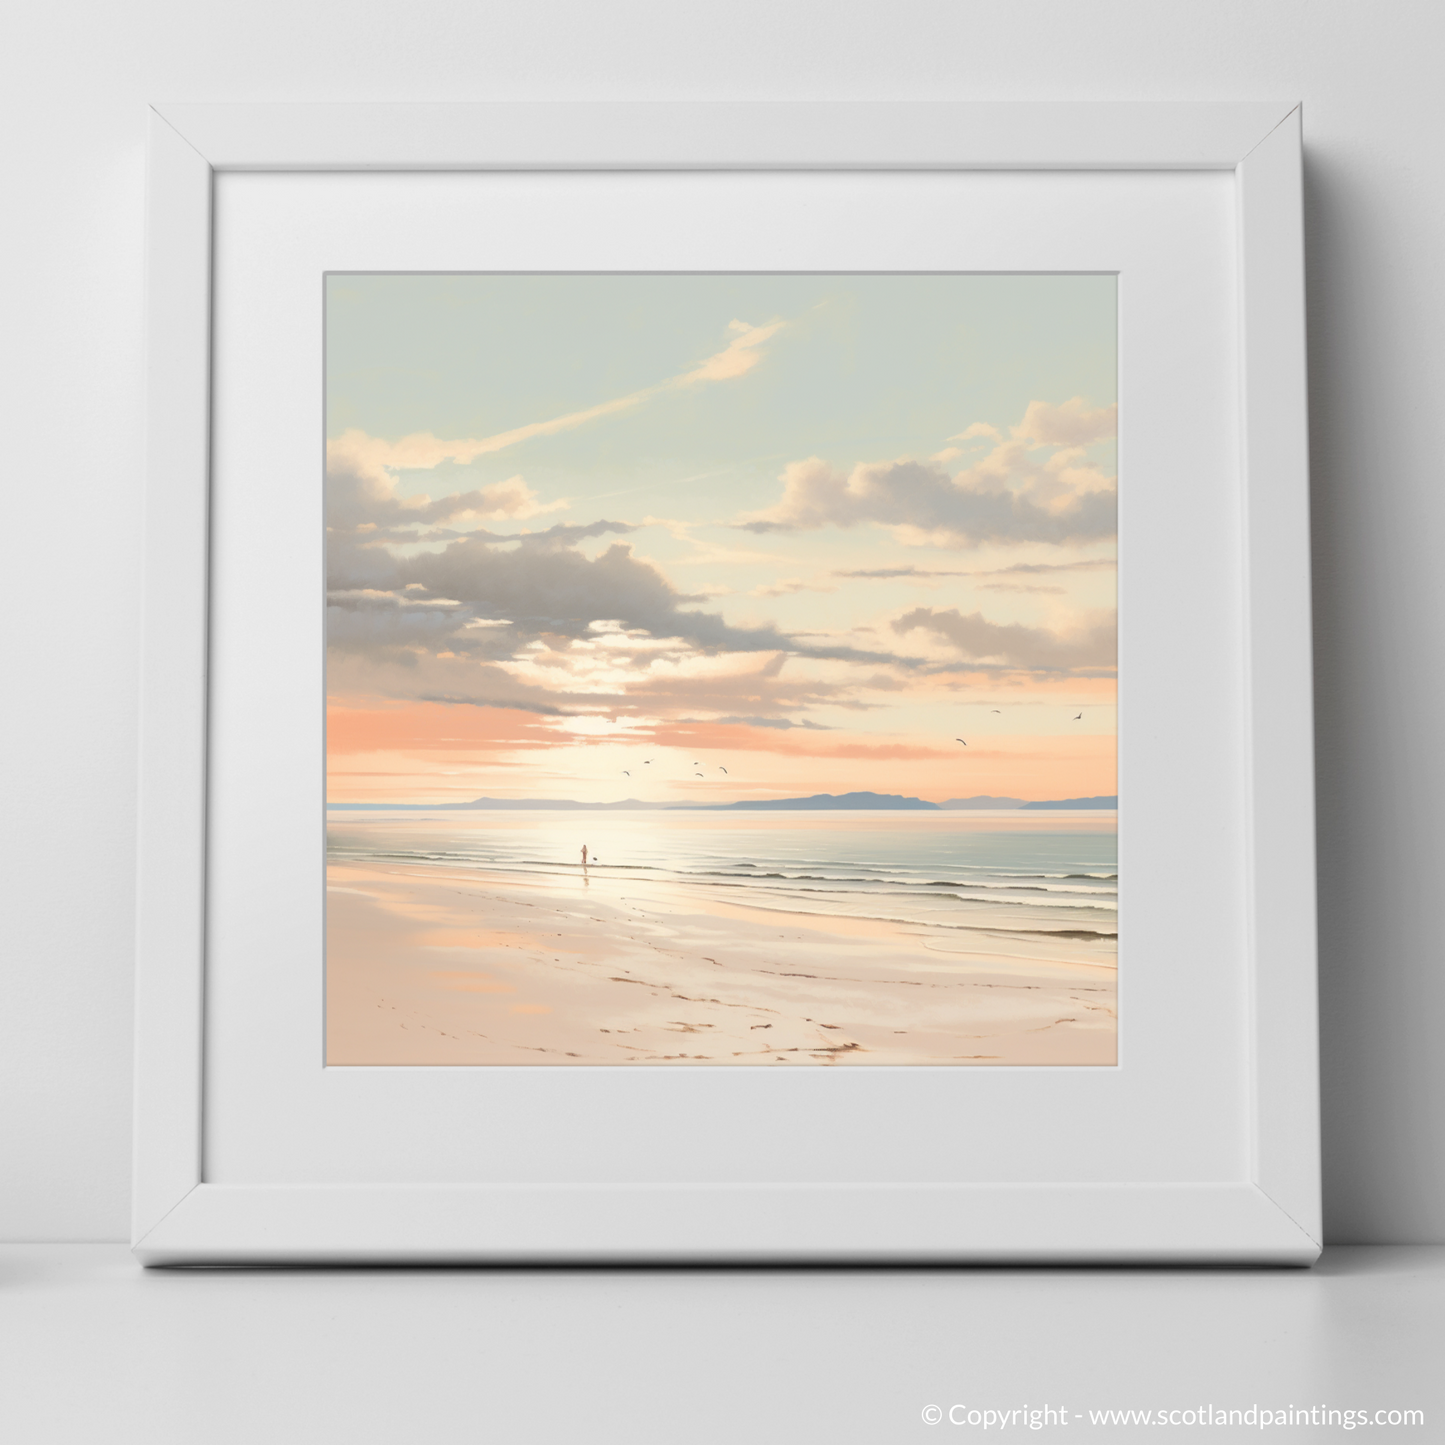 Sunset Solitude on Nairn Beach